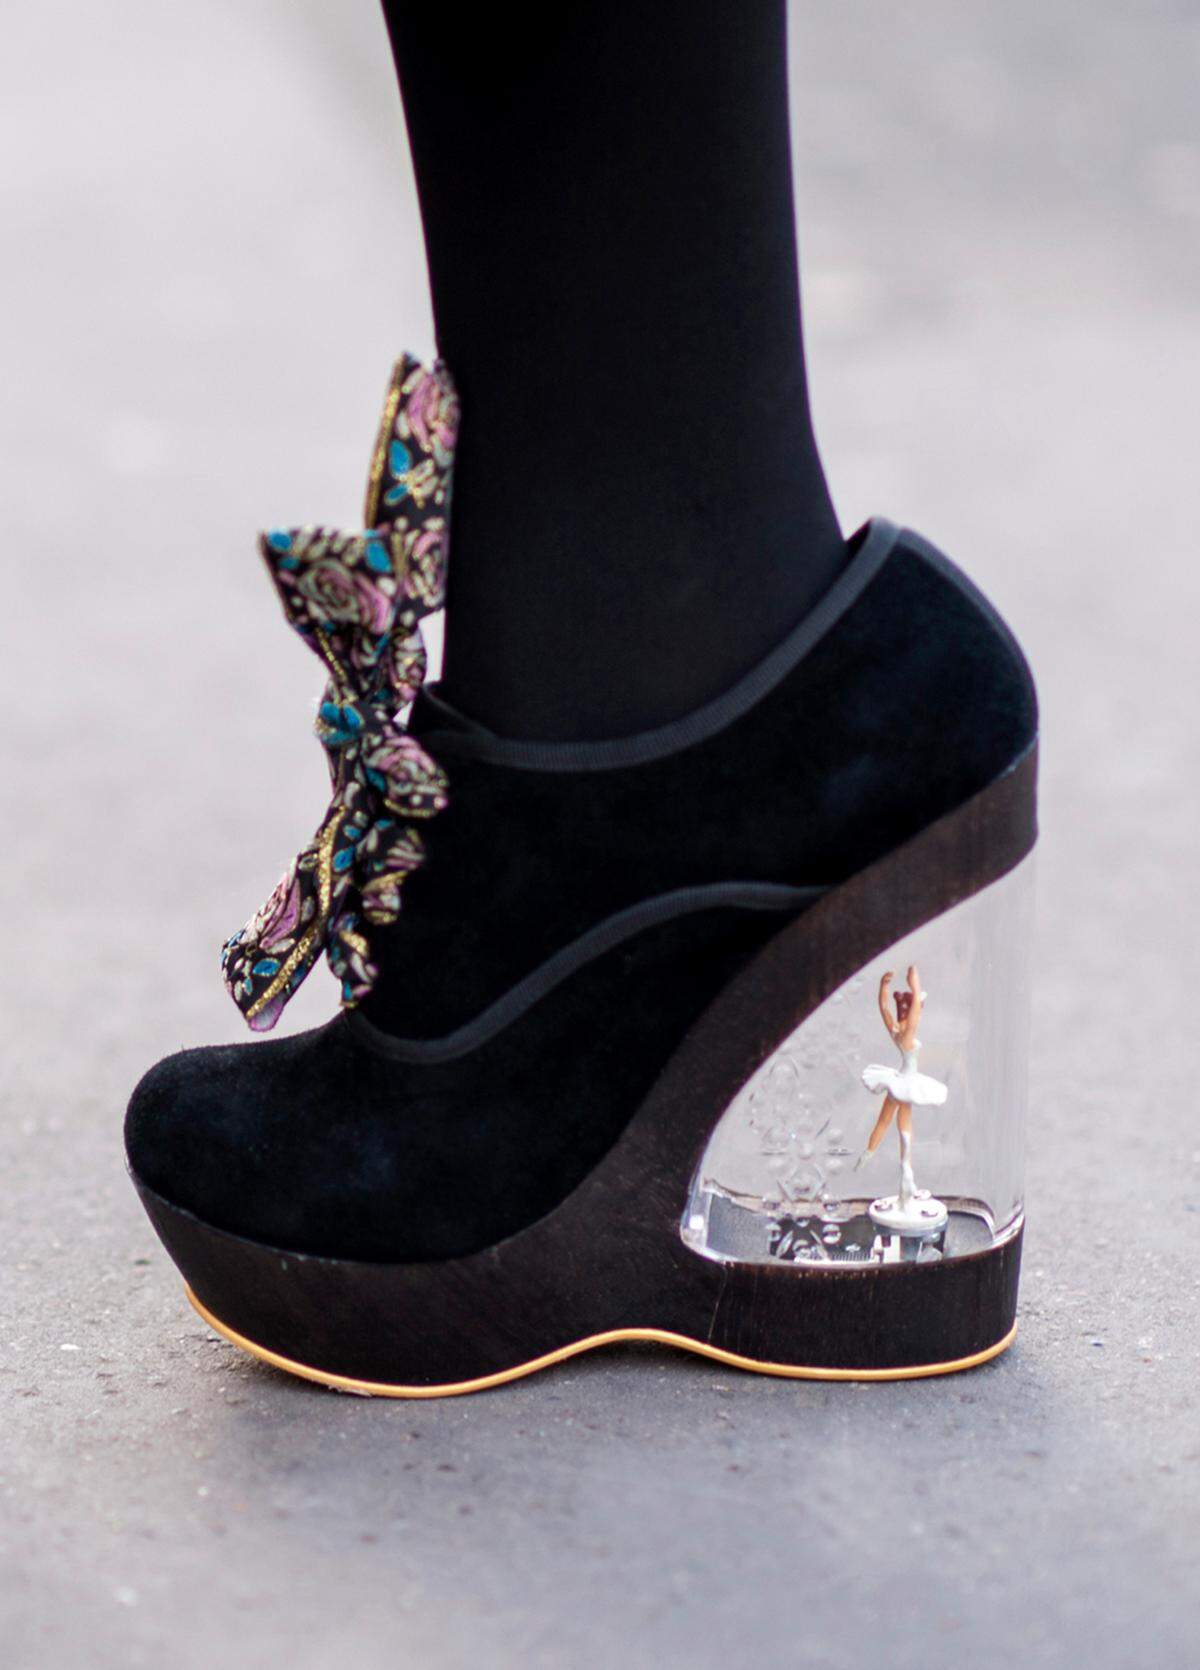 Dass Schuhe echte Kunstwerke sein können, beweist dieses Modell - mit durchsichtigem Absatz, in dem eine Ballerina eingefasst ist. Der Plateauschuh erinnert so an eine altmodische Spieluhr. Die Fotografin - Suzanne Middlemass - dürfte einen Blick für Details haben.